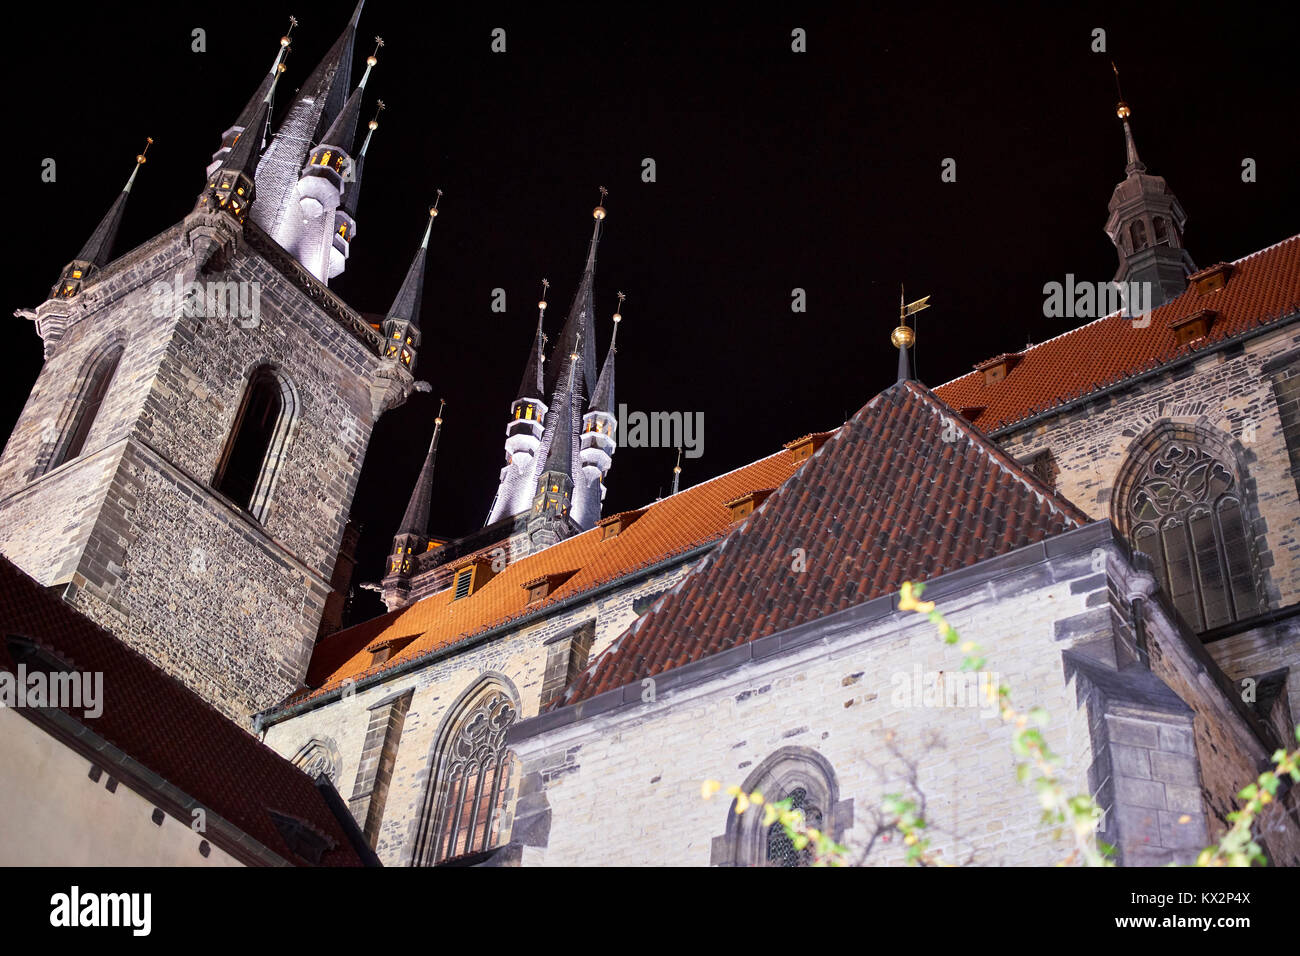 Église de Notre-Dame de Týn, Prague Place de la vieille ville, la nuit - abstract view regardant vers le haut Banque D'Images